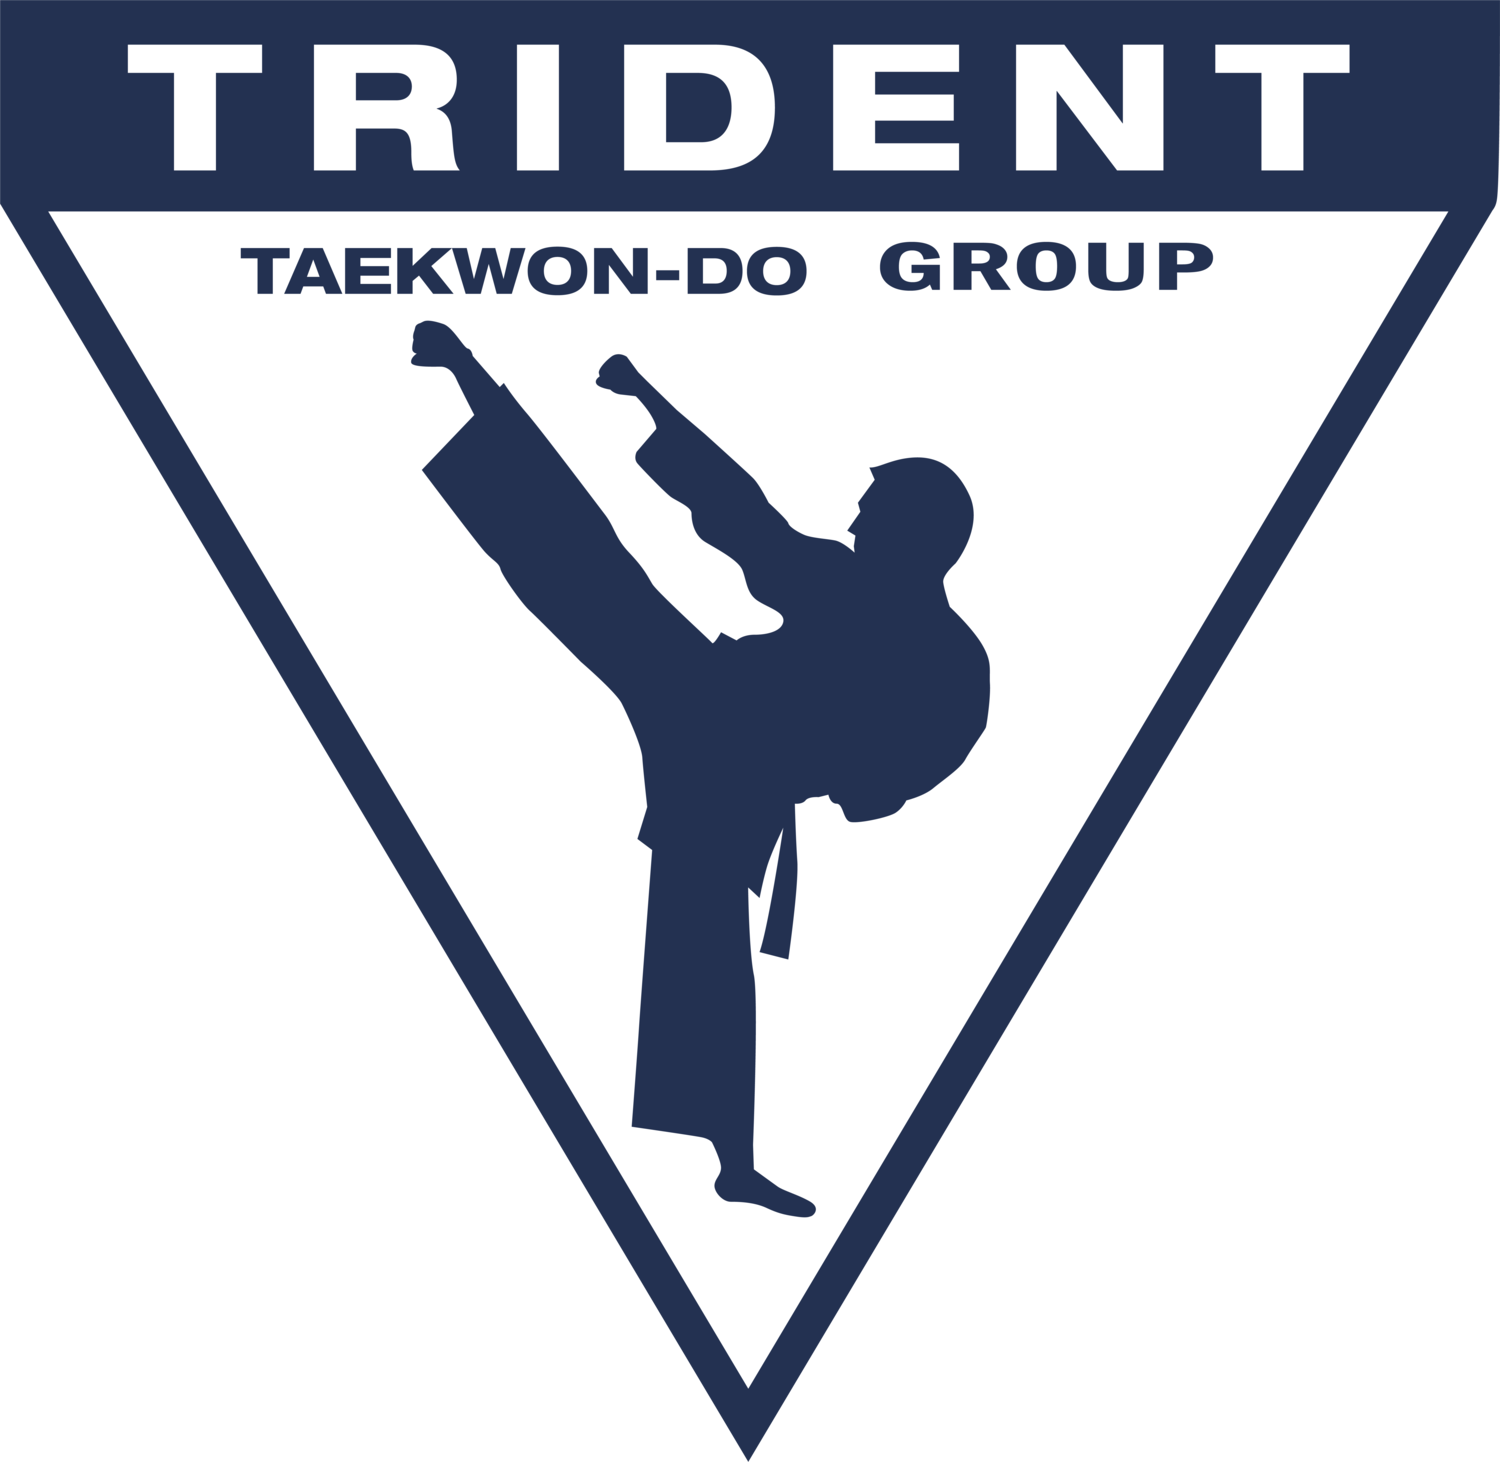 TRIDENT TAEKWON-DO GROUP